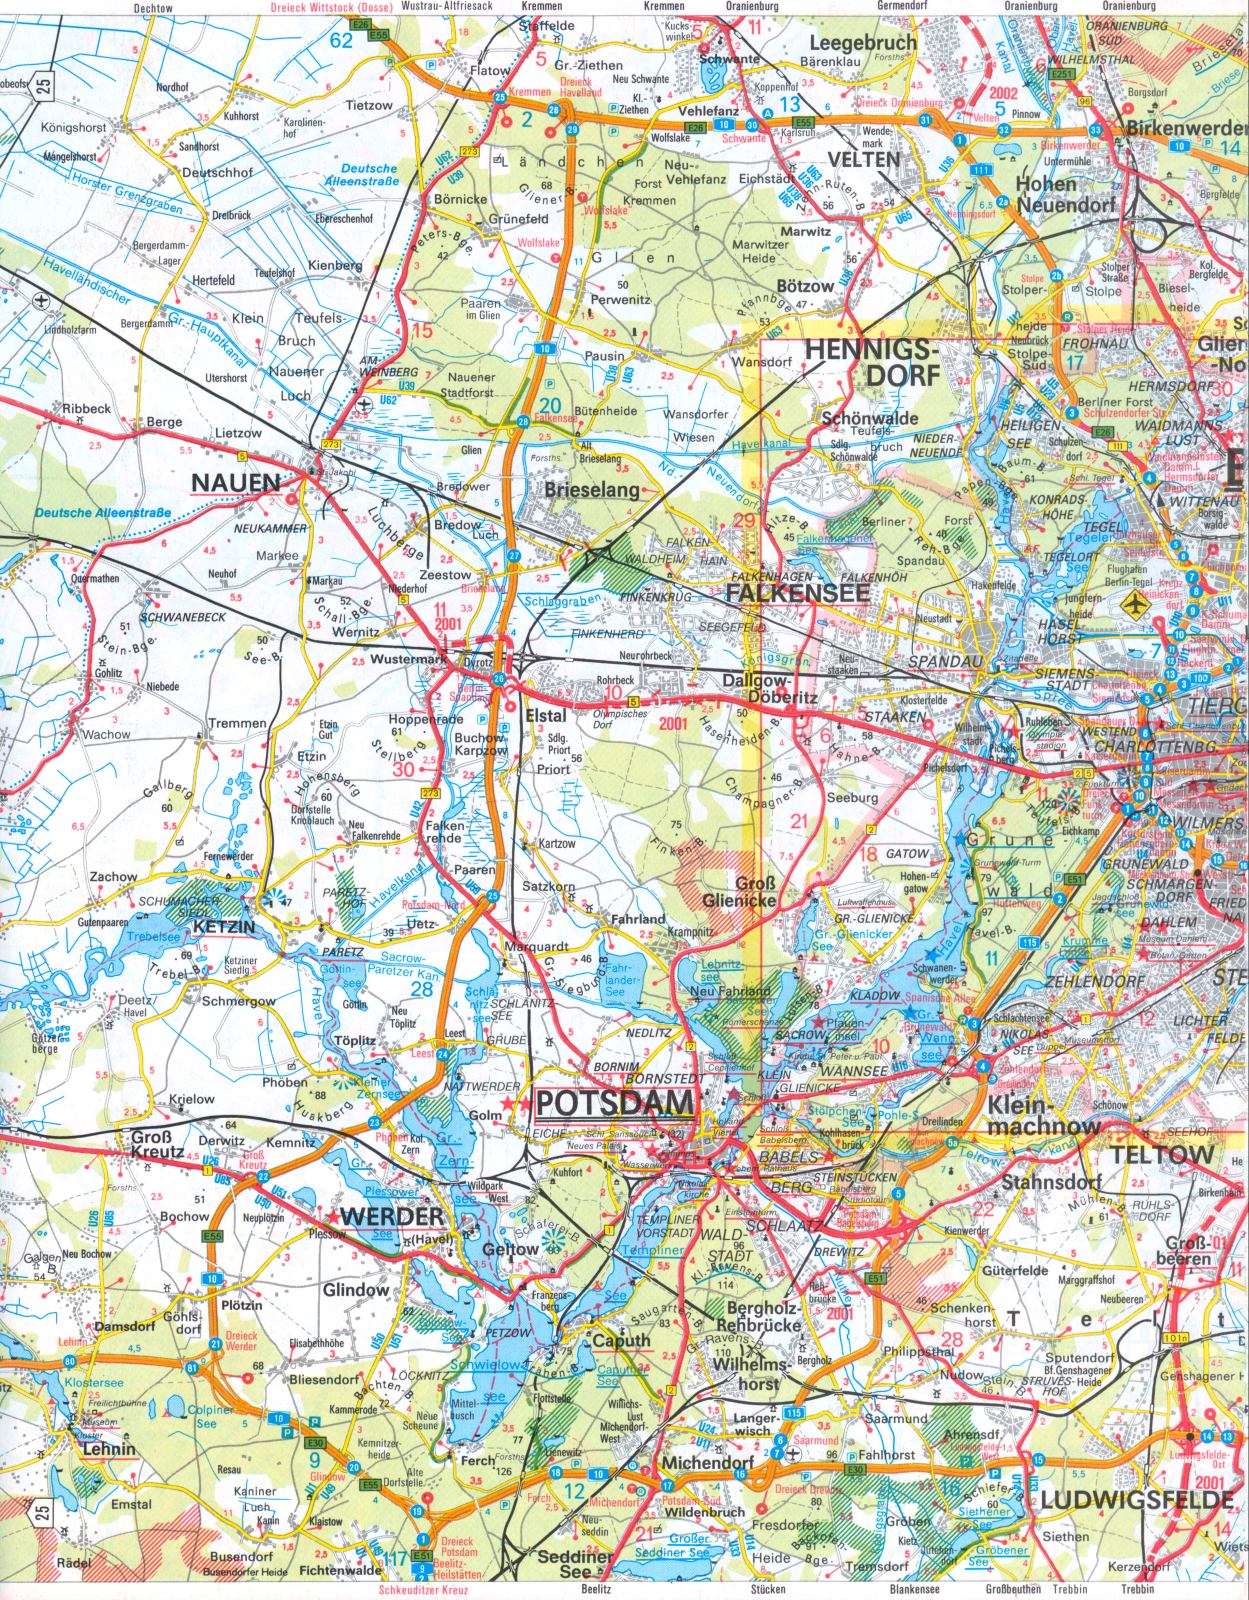 Карта окрестностей Берлина. Большая подробная автомобильная карта окрестностей Берлина, A0 - 